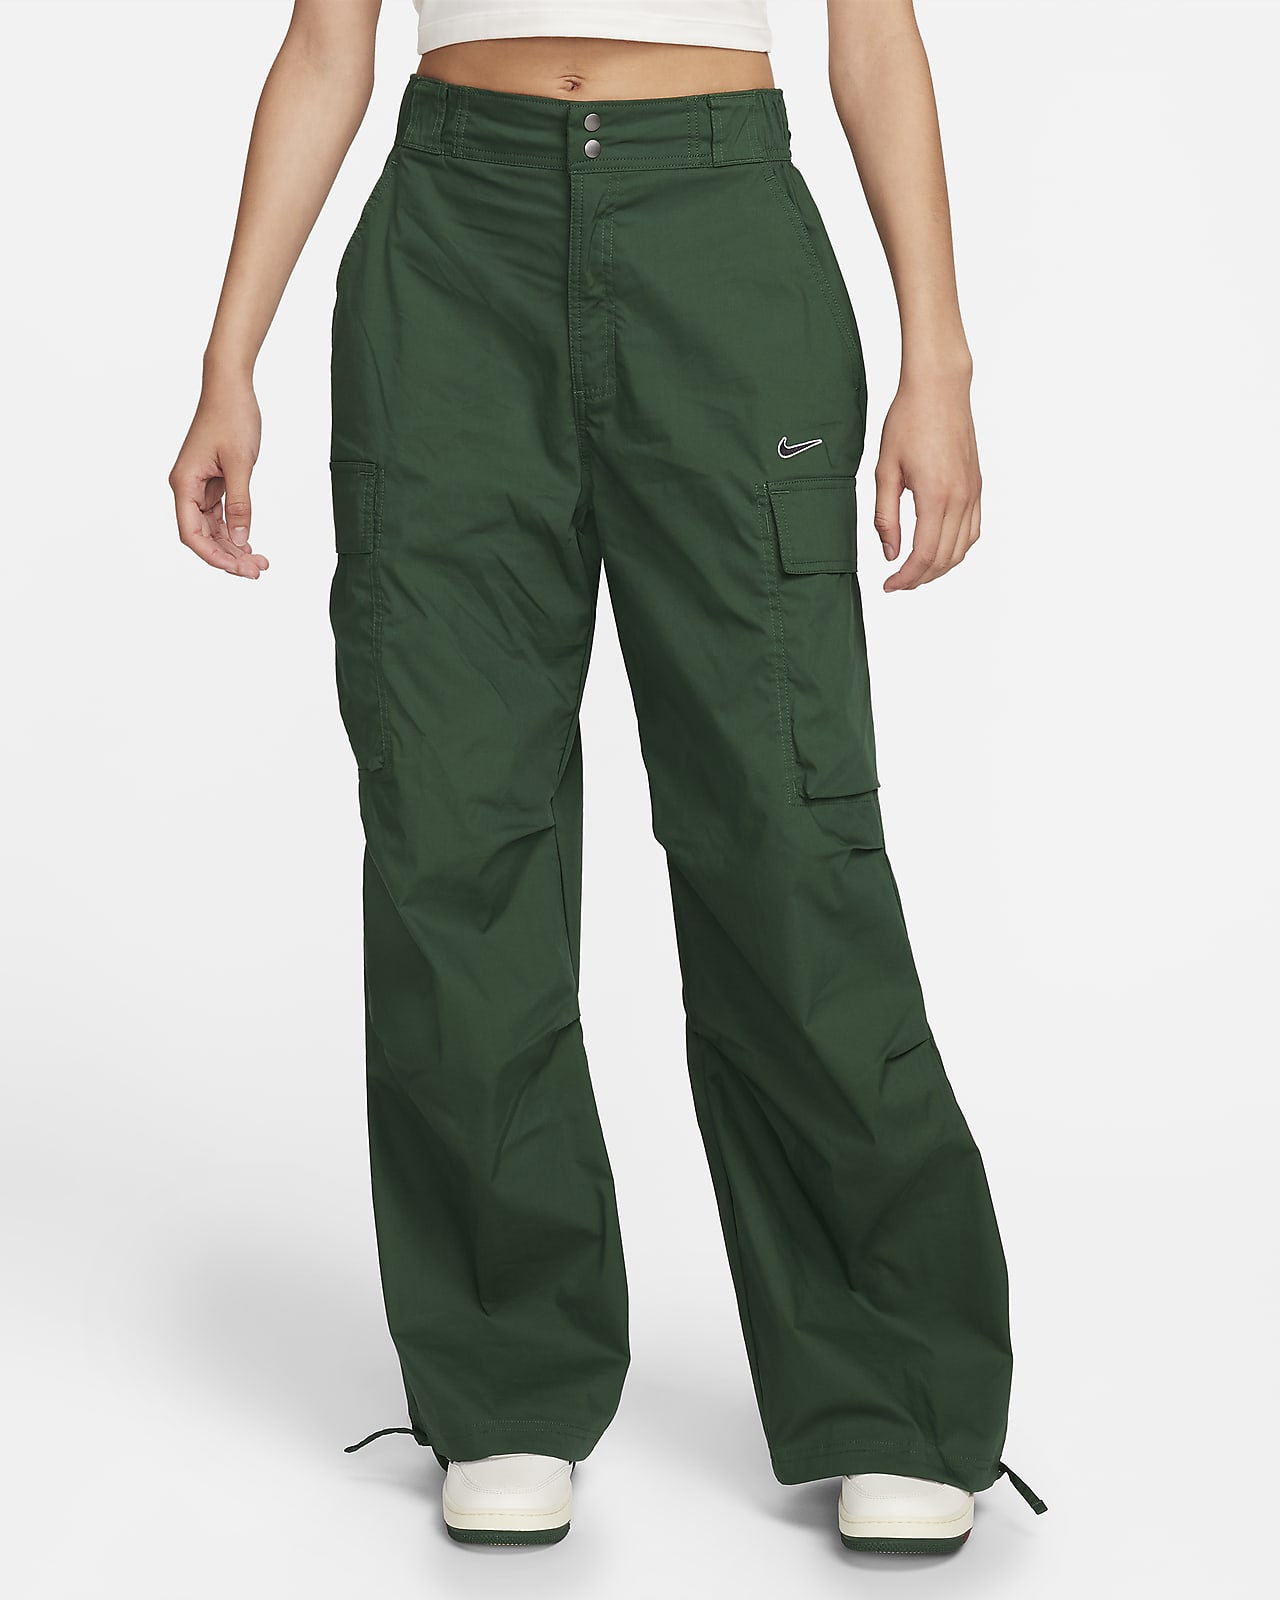 Pantalon cargo tissé extensible pour femme 27 - tout en mouvement vert  clair L